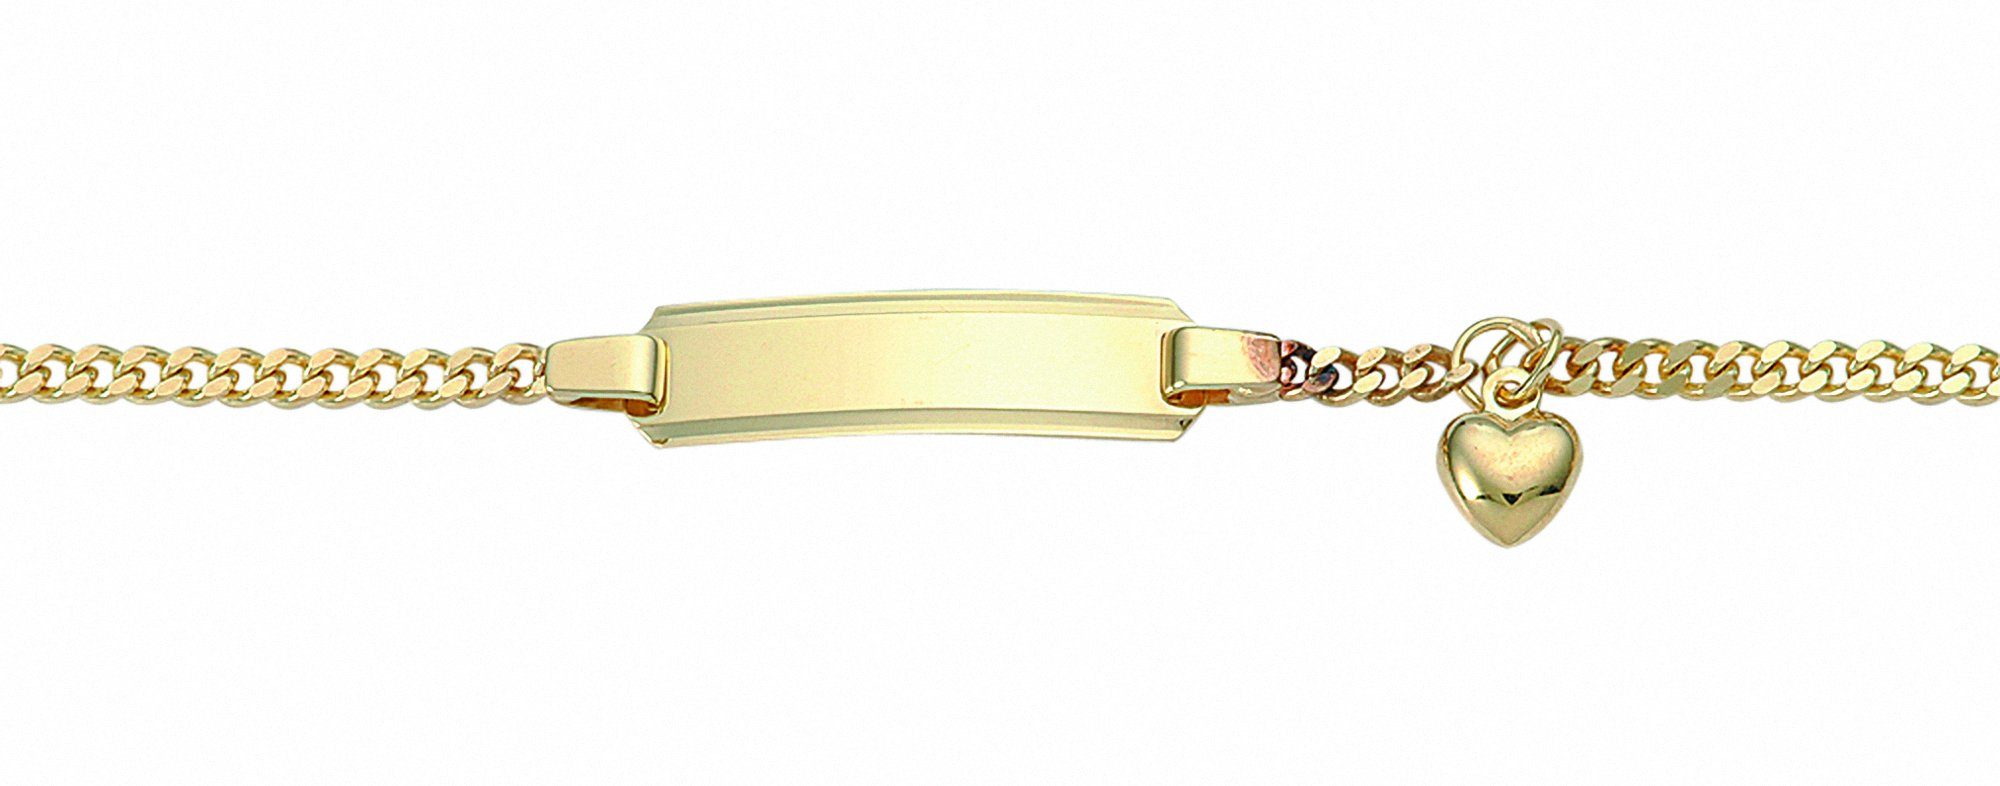 Adelia´s Goldarmband 585 Gold Flach Panzer Armband Mit Motiven 16 cm, 585 Gold Goldschmuck für Damen